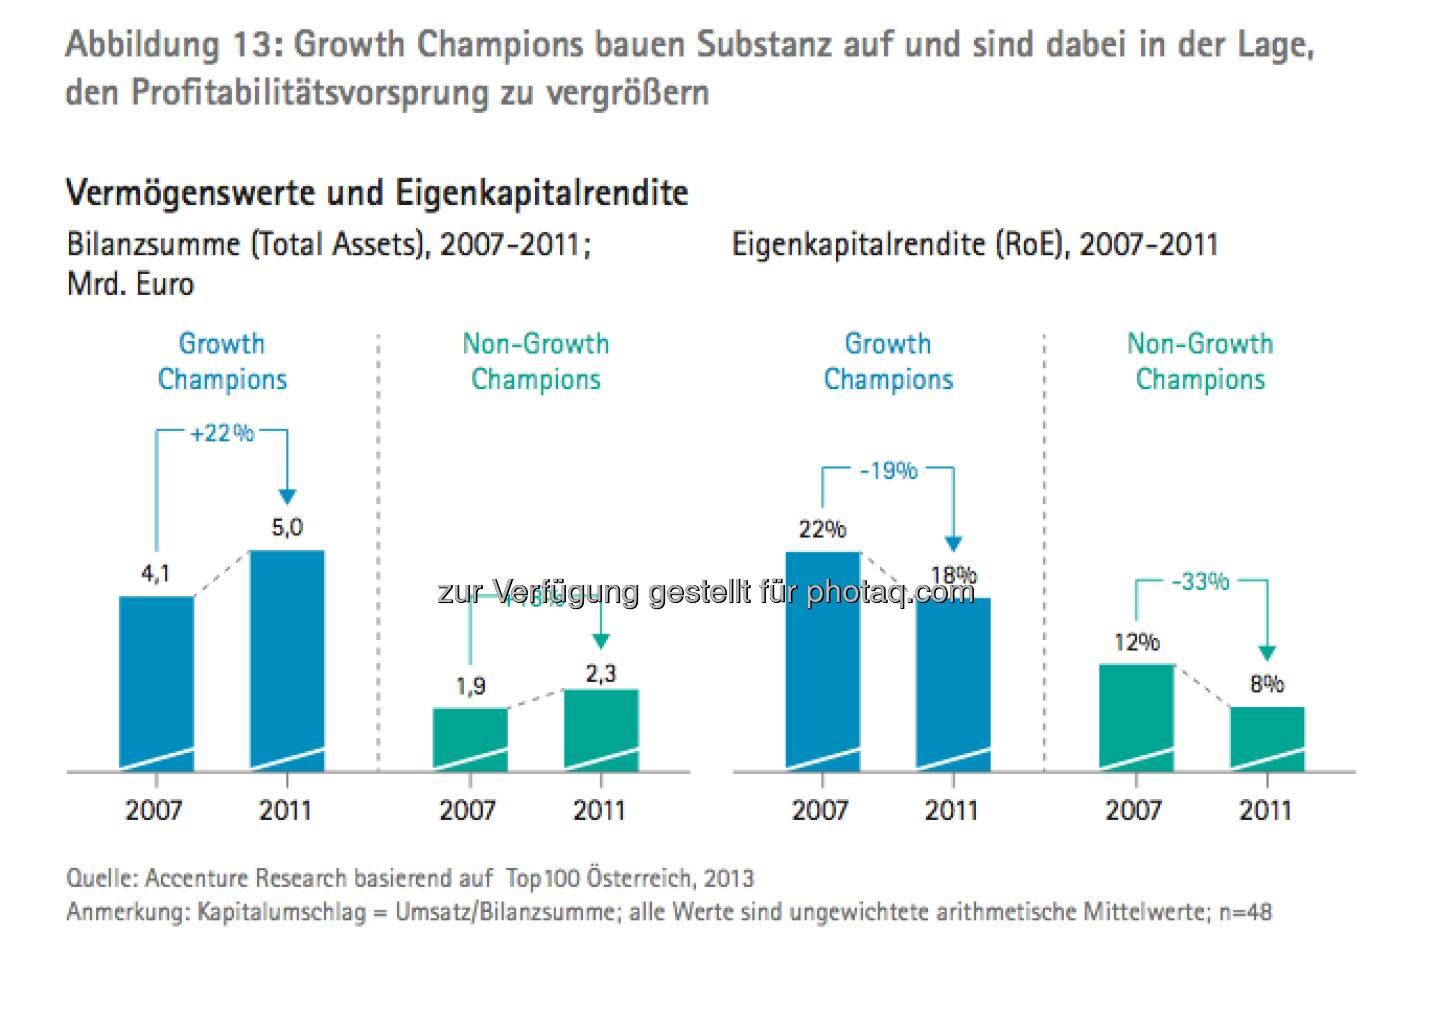 Die Growth Champions unter Österreichs Top100: Vermögenswerte und Eigenkapitalrendite - die Studie gibt es unter http://www.accenture.com/at-de/Pages/index.aspx zum Download